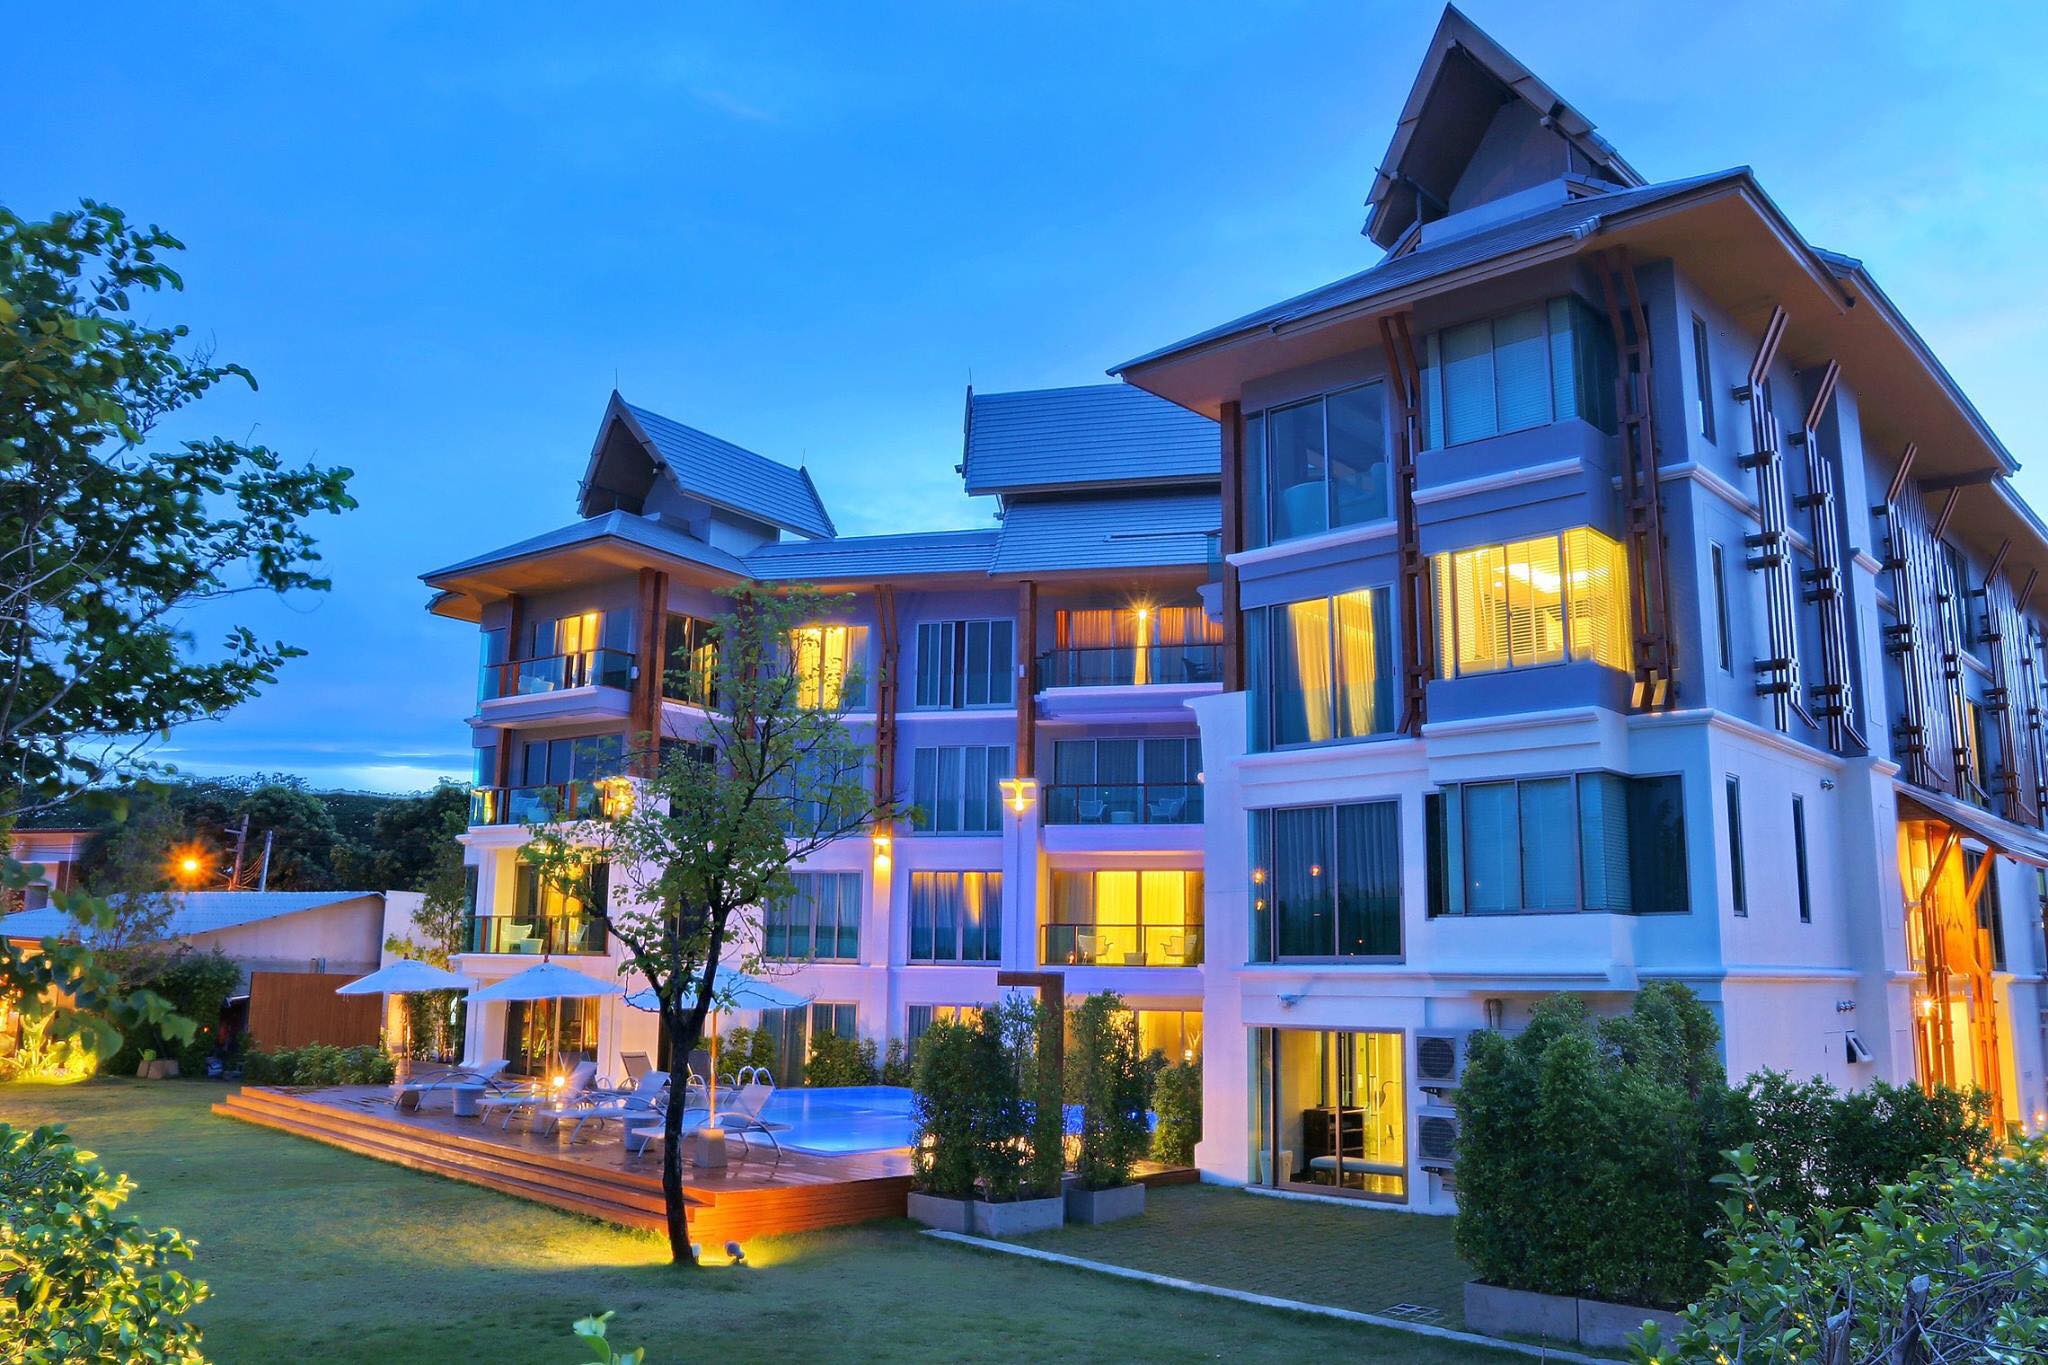 The Chiang Mai Riverside Hotel